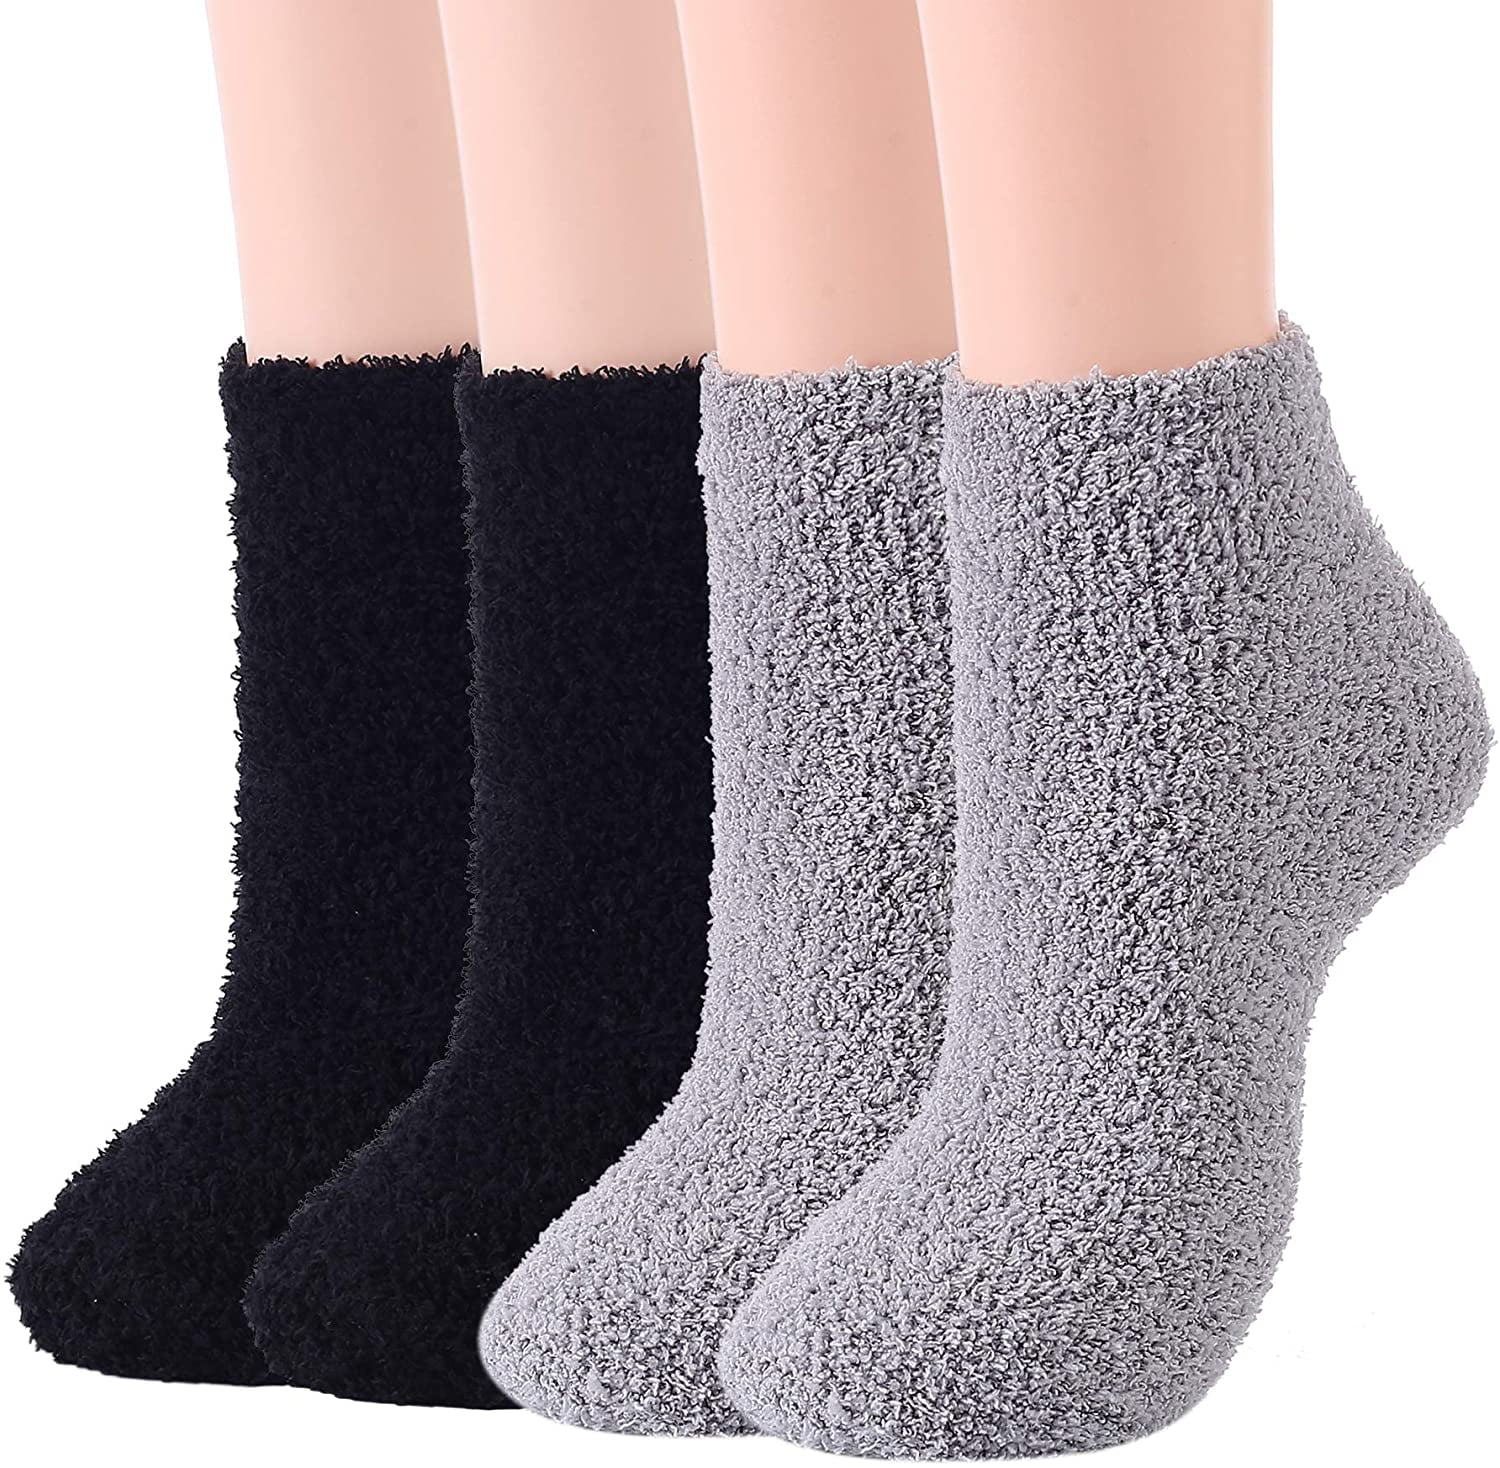 Winter Fluffy Socks Non Slip Slipper Socks Plush Thick Cozy Socks Warm Fluffy Crew Socks Fuzzy Socks For Women Men